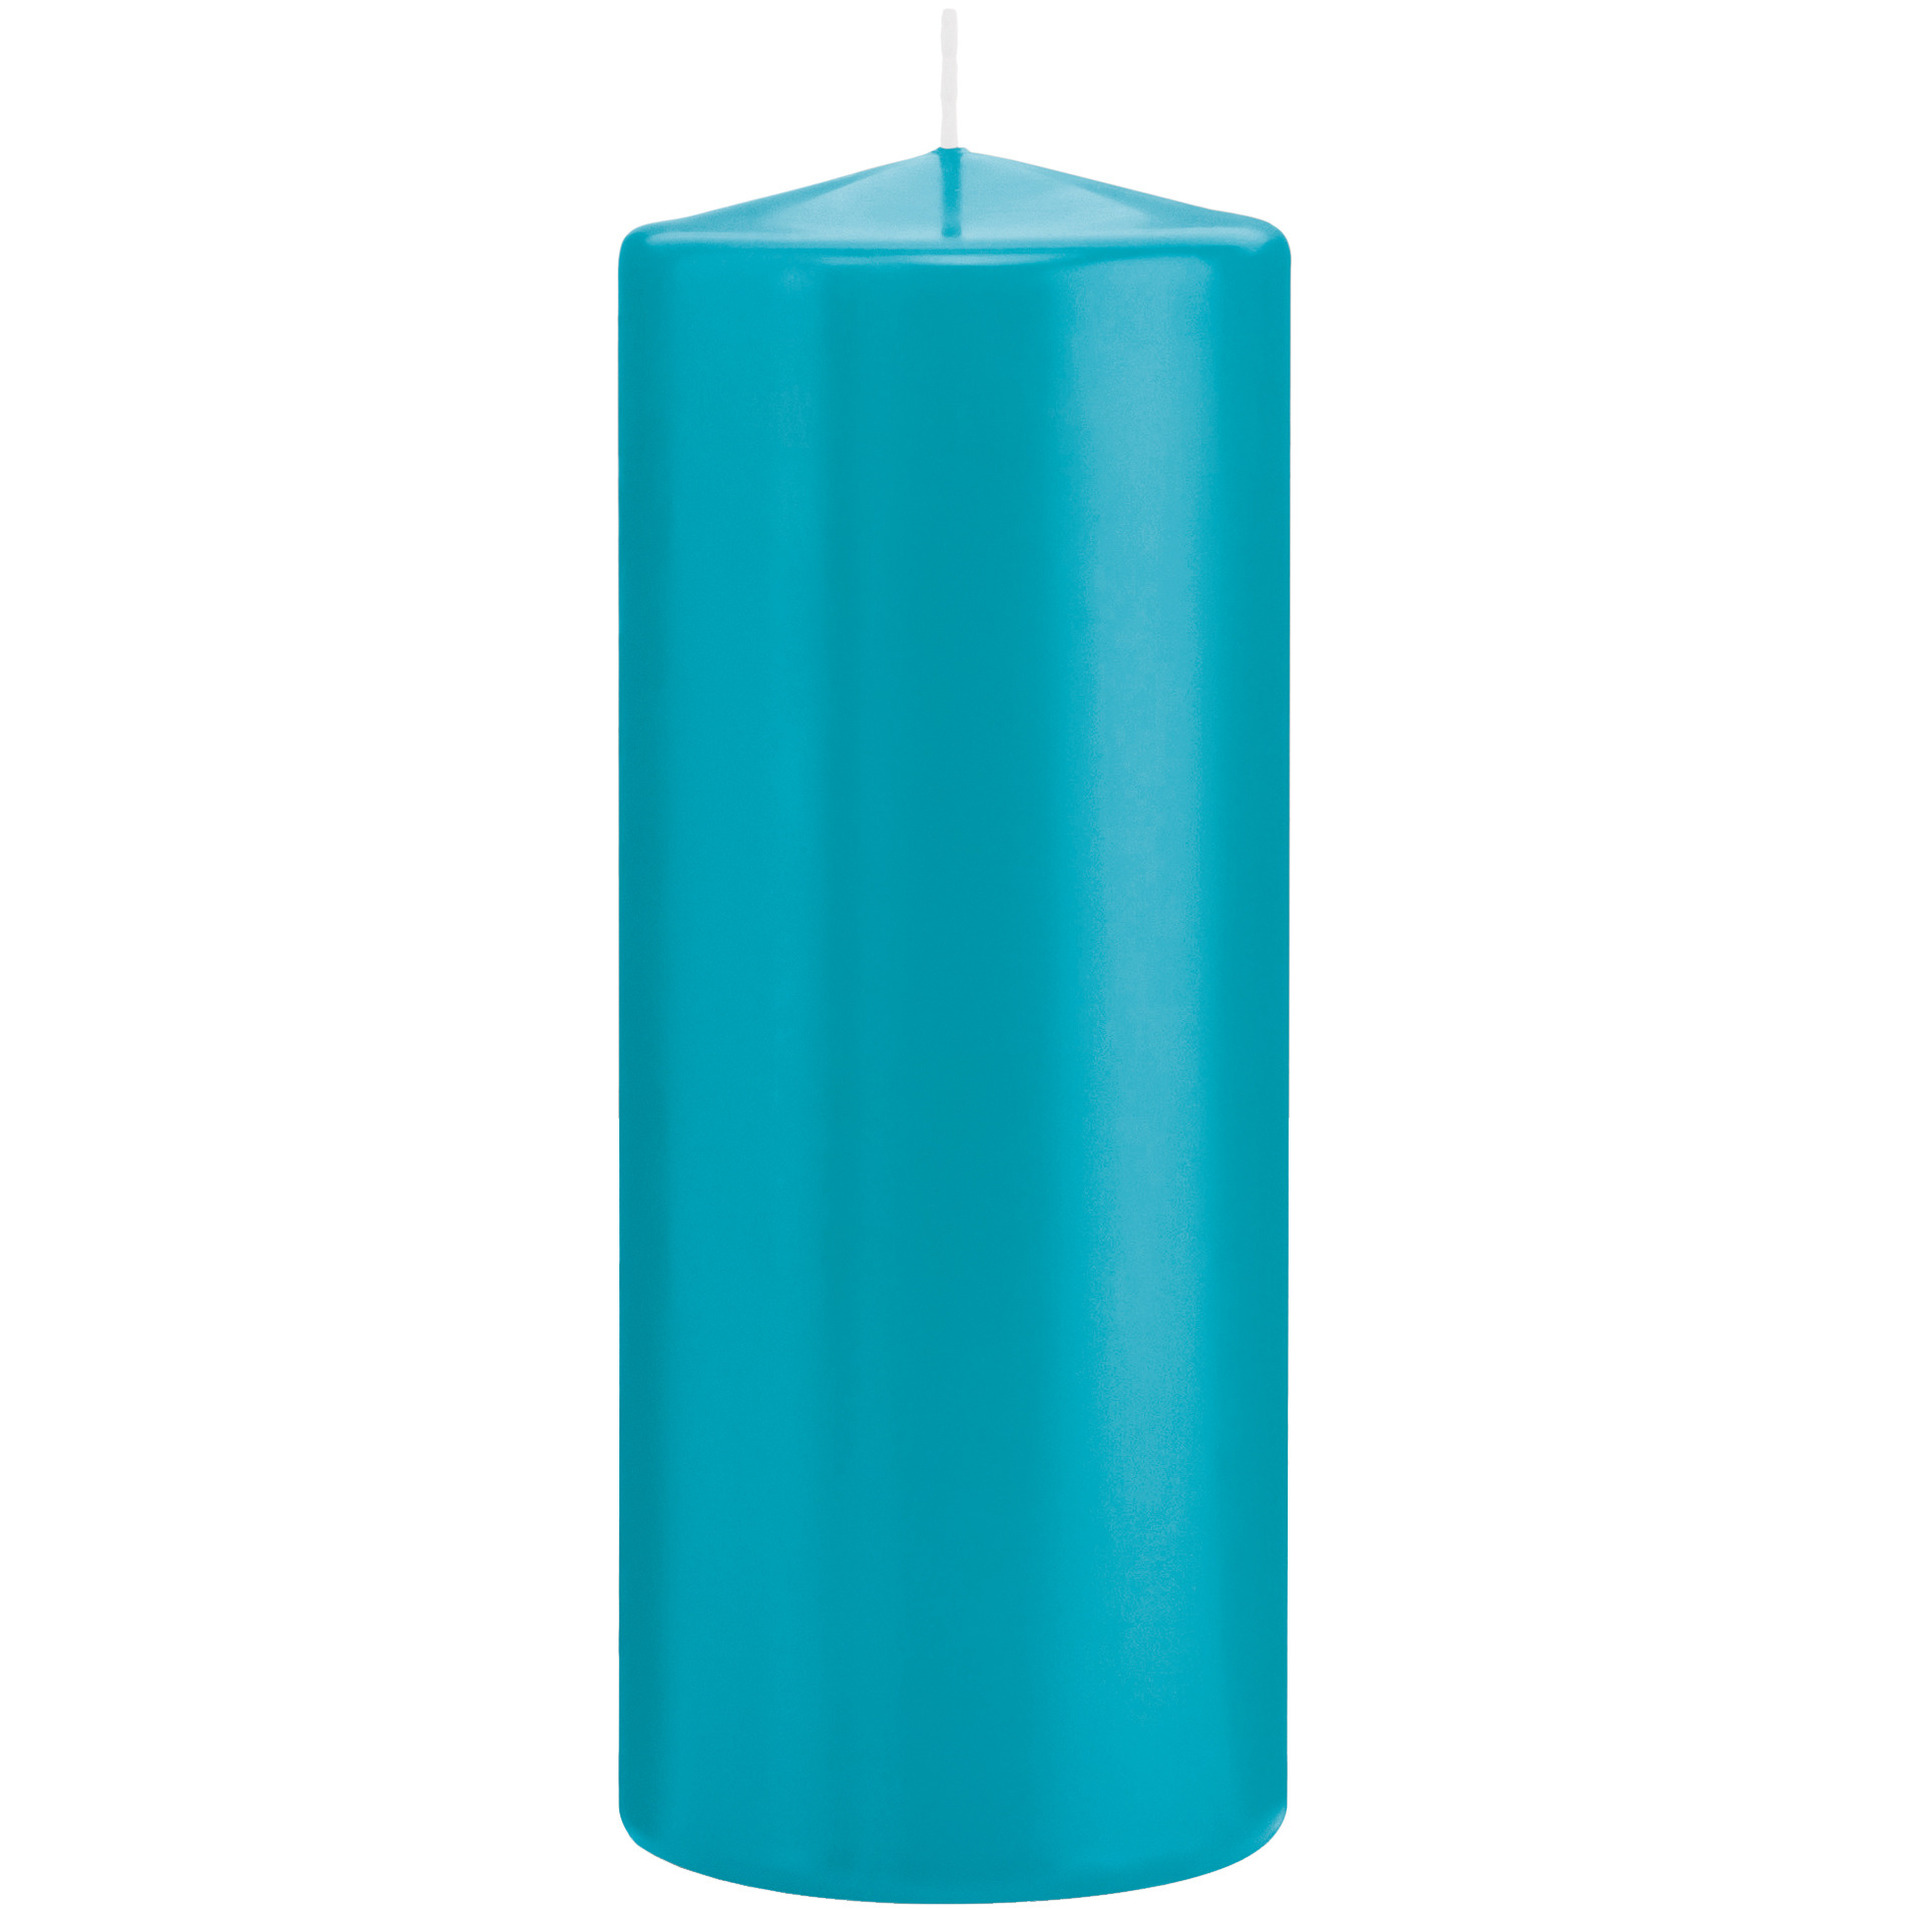 1x Turquoise blauwe woondecoratie kaarsen 8 x 20 cm 119 branduren